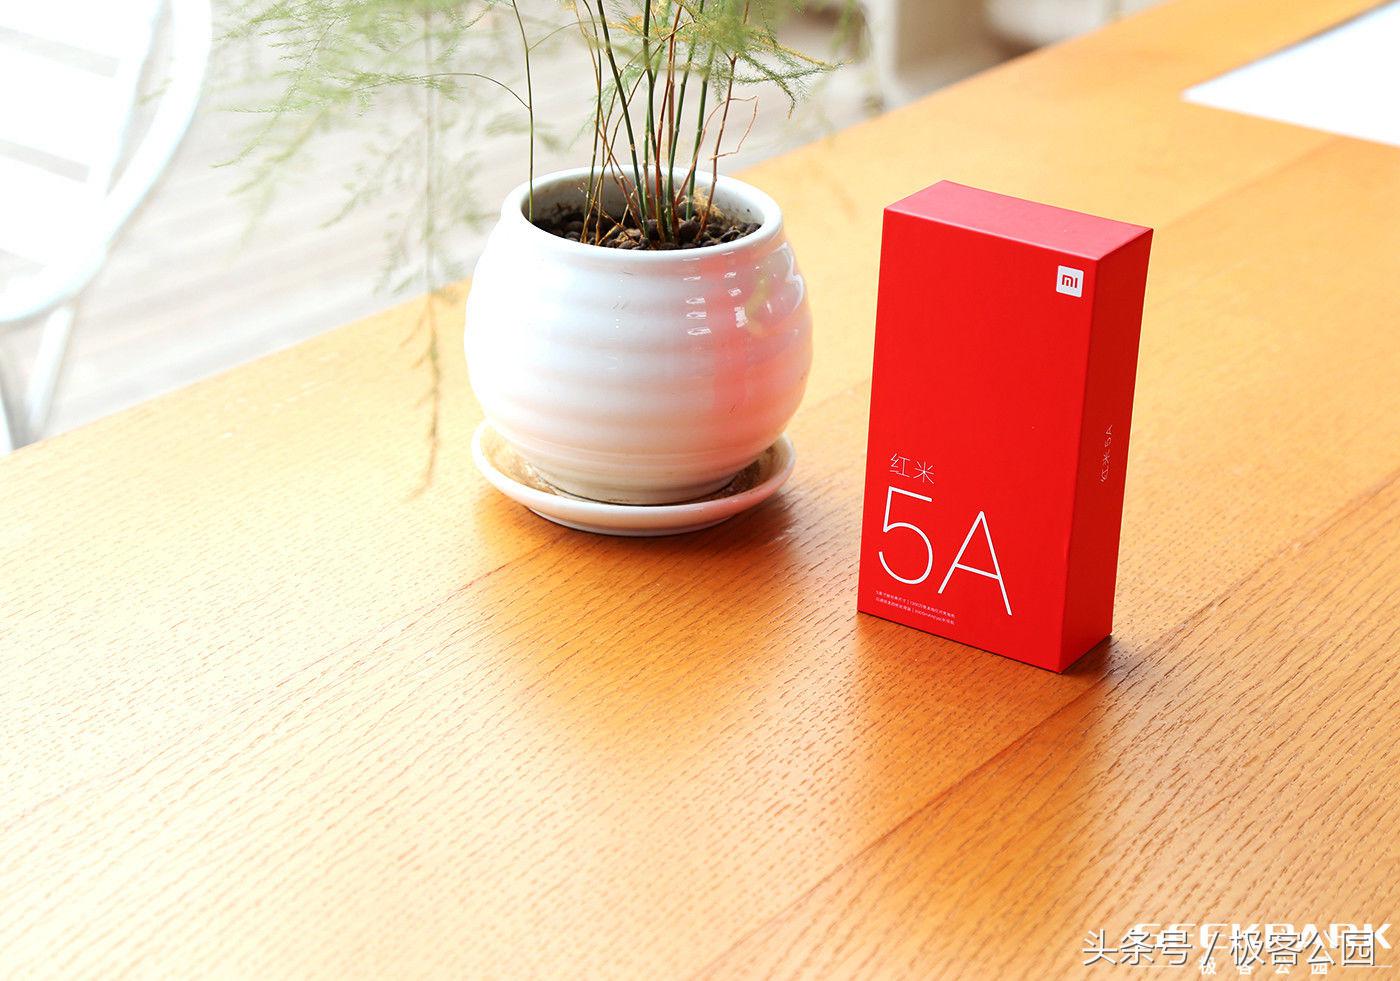 红米note 5A 图赏：大充电电池、低市场价，一款性价比高百元机